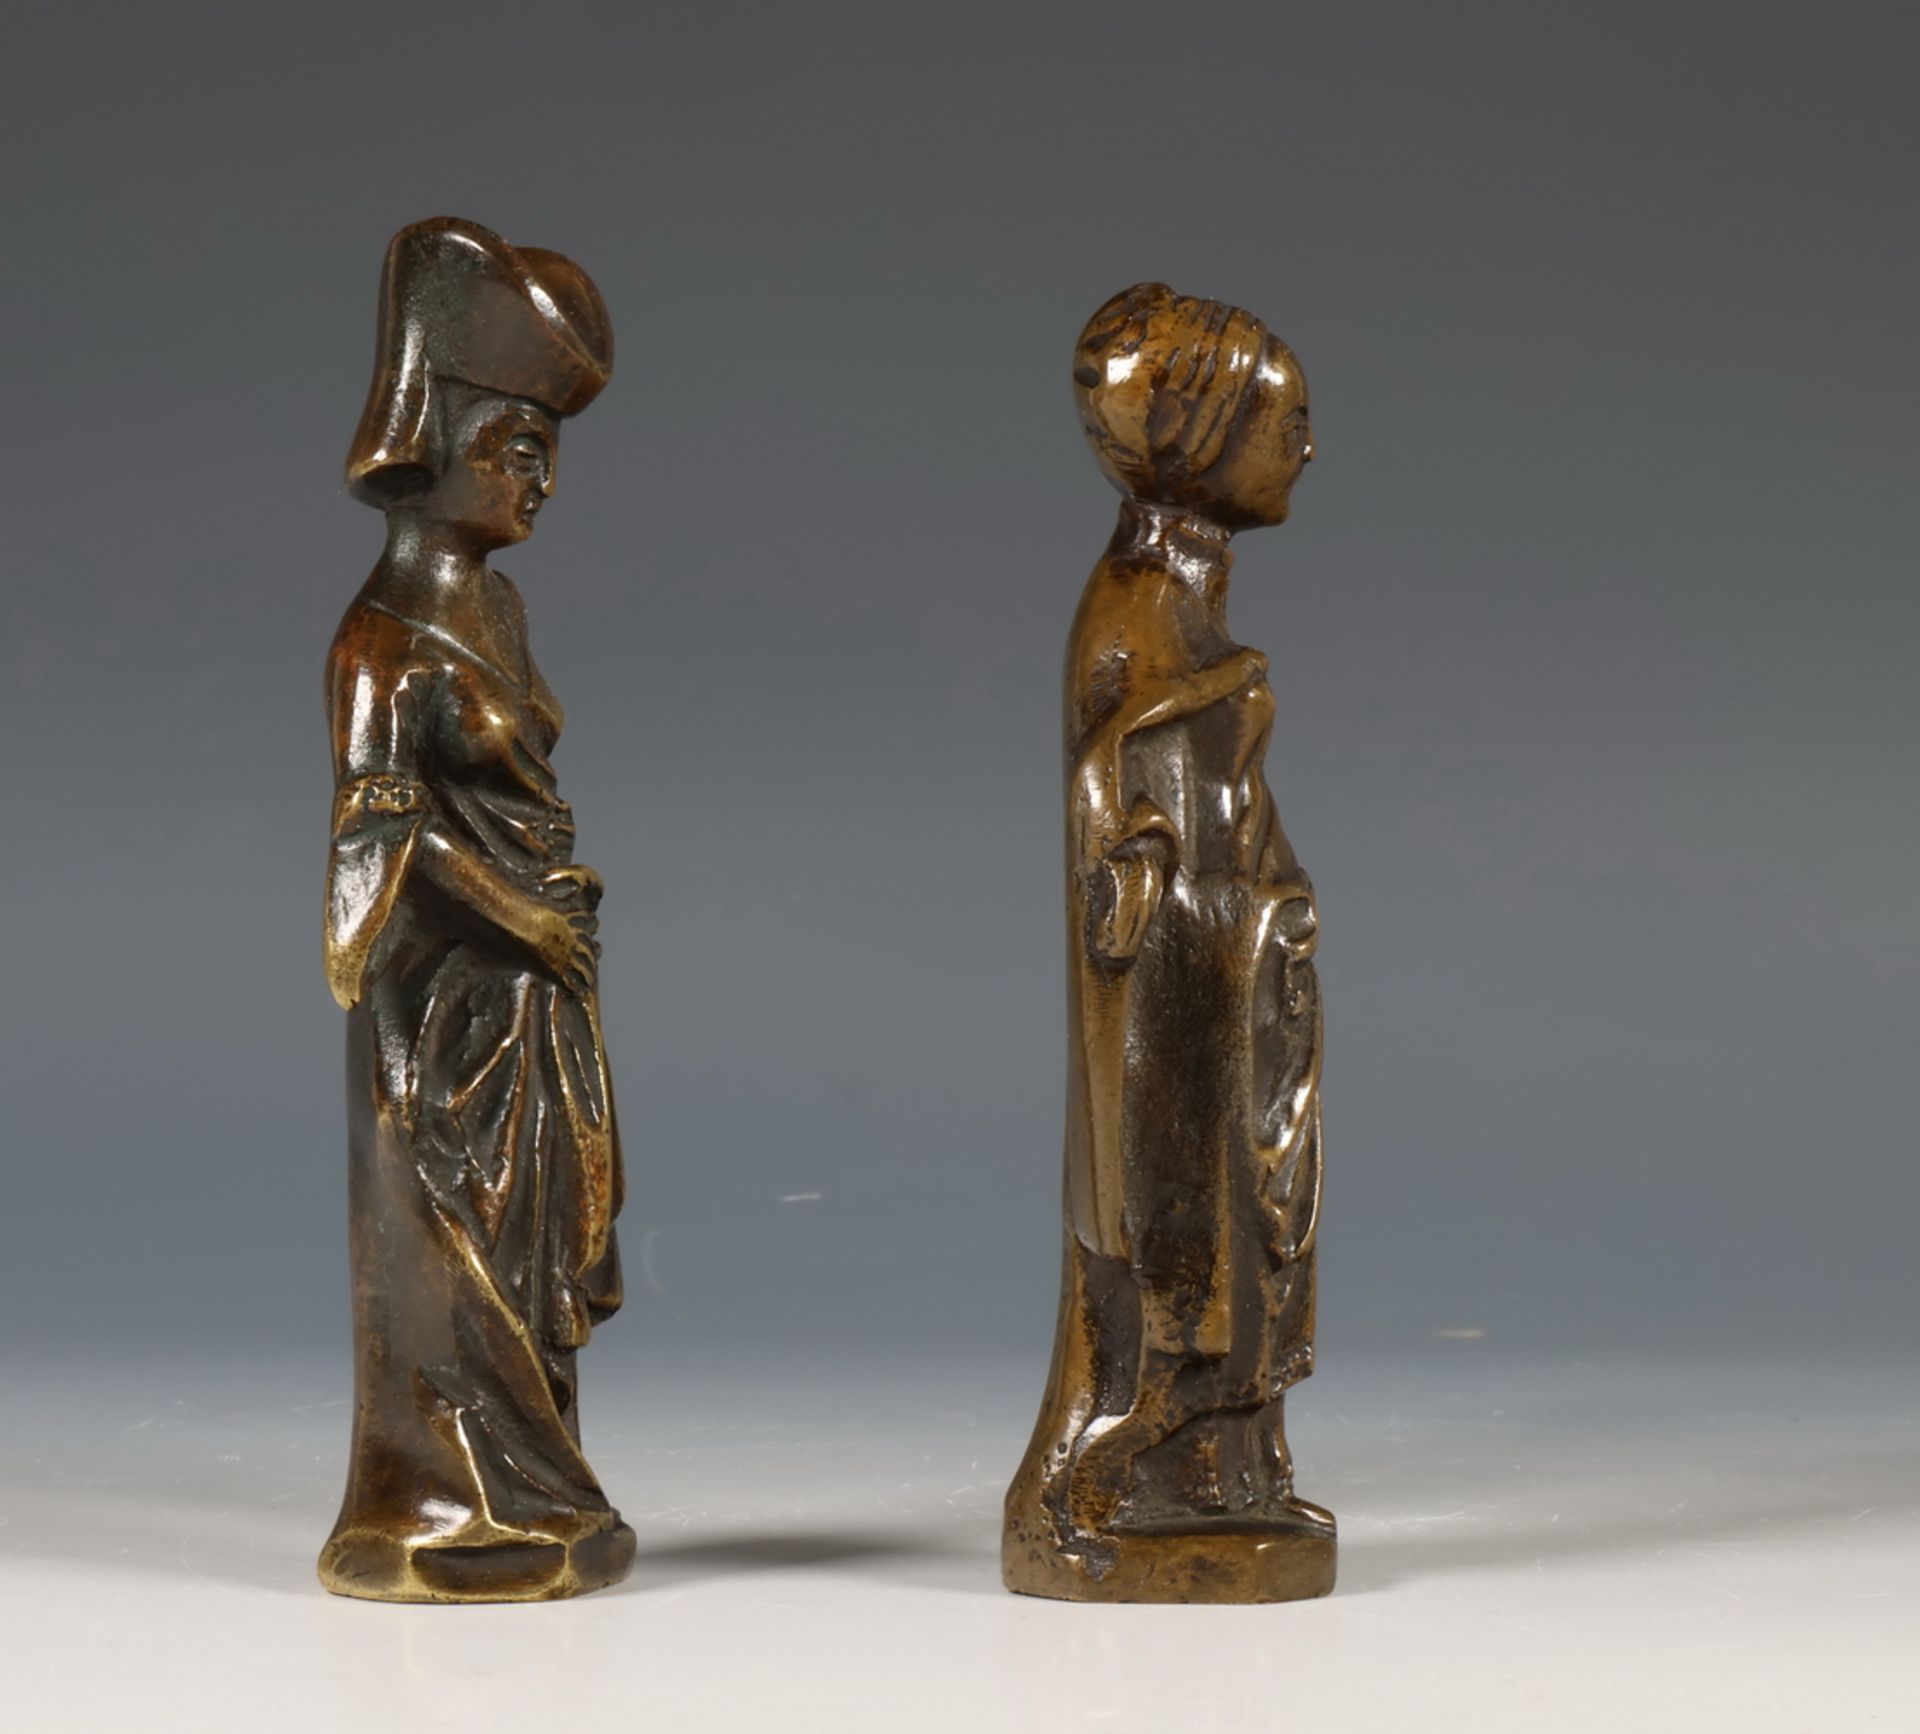 Paar bruin gepatineerd bronzen pleurantes in Middeleeuwse stijl, waarschijnlijk 18e eeuw - Bild 4 aus 5